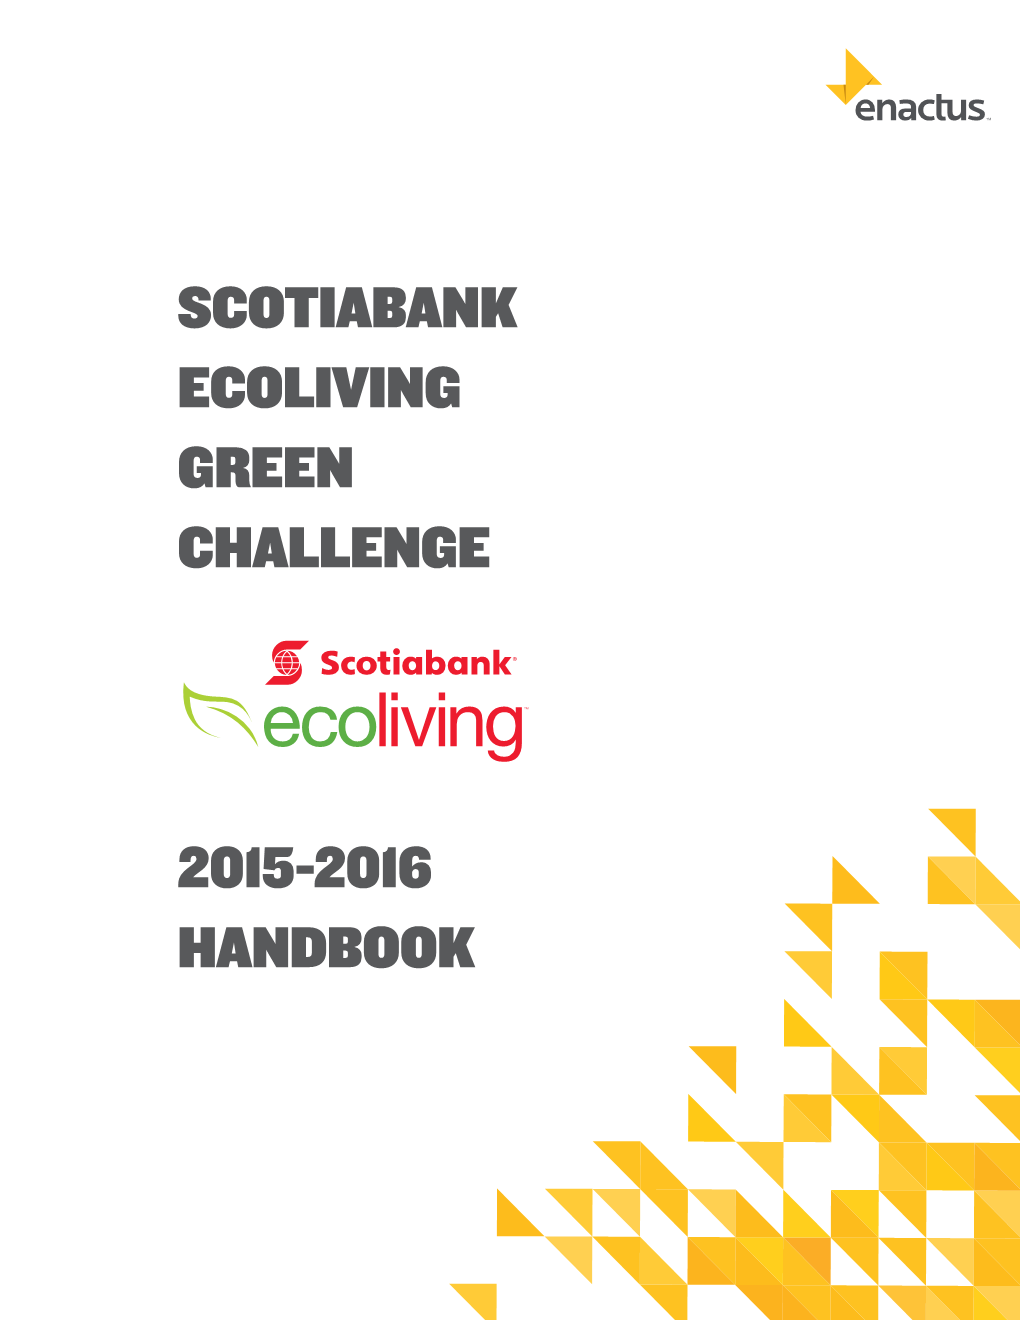 Scotiabank Ecoliving Green Challenge 2015-2016 Handbook